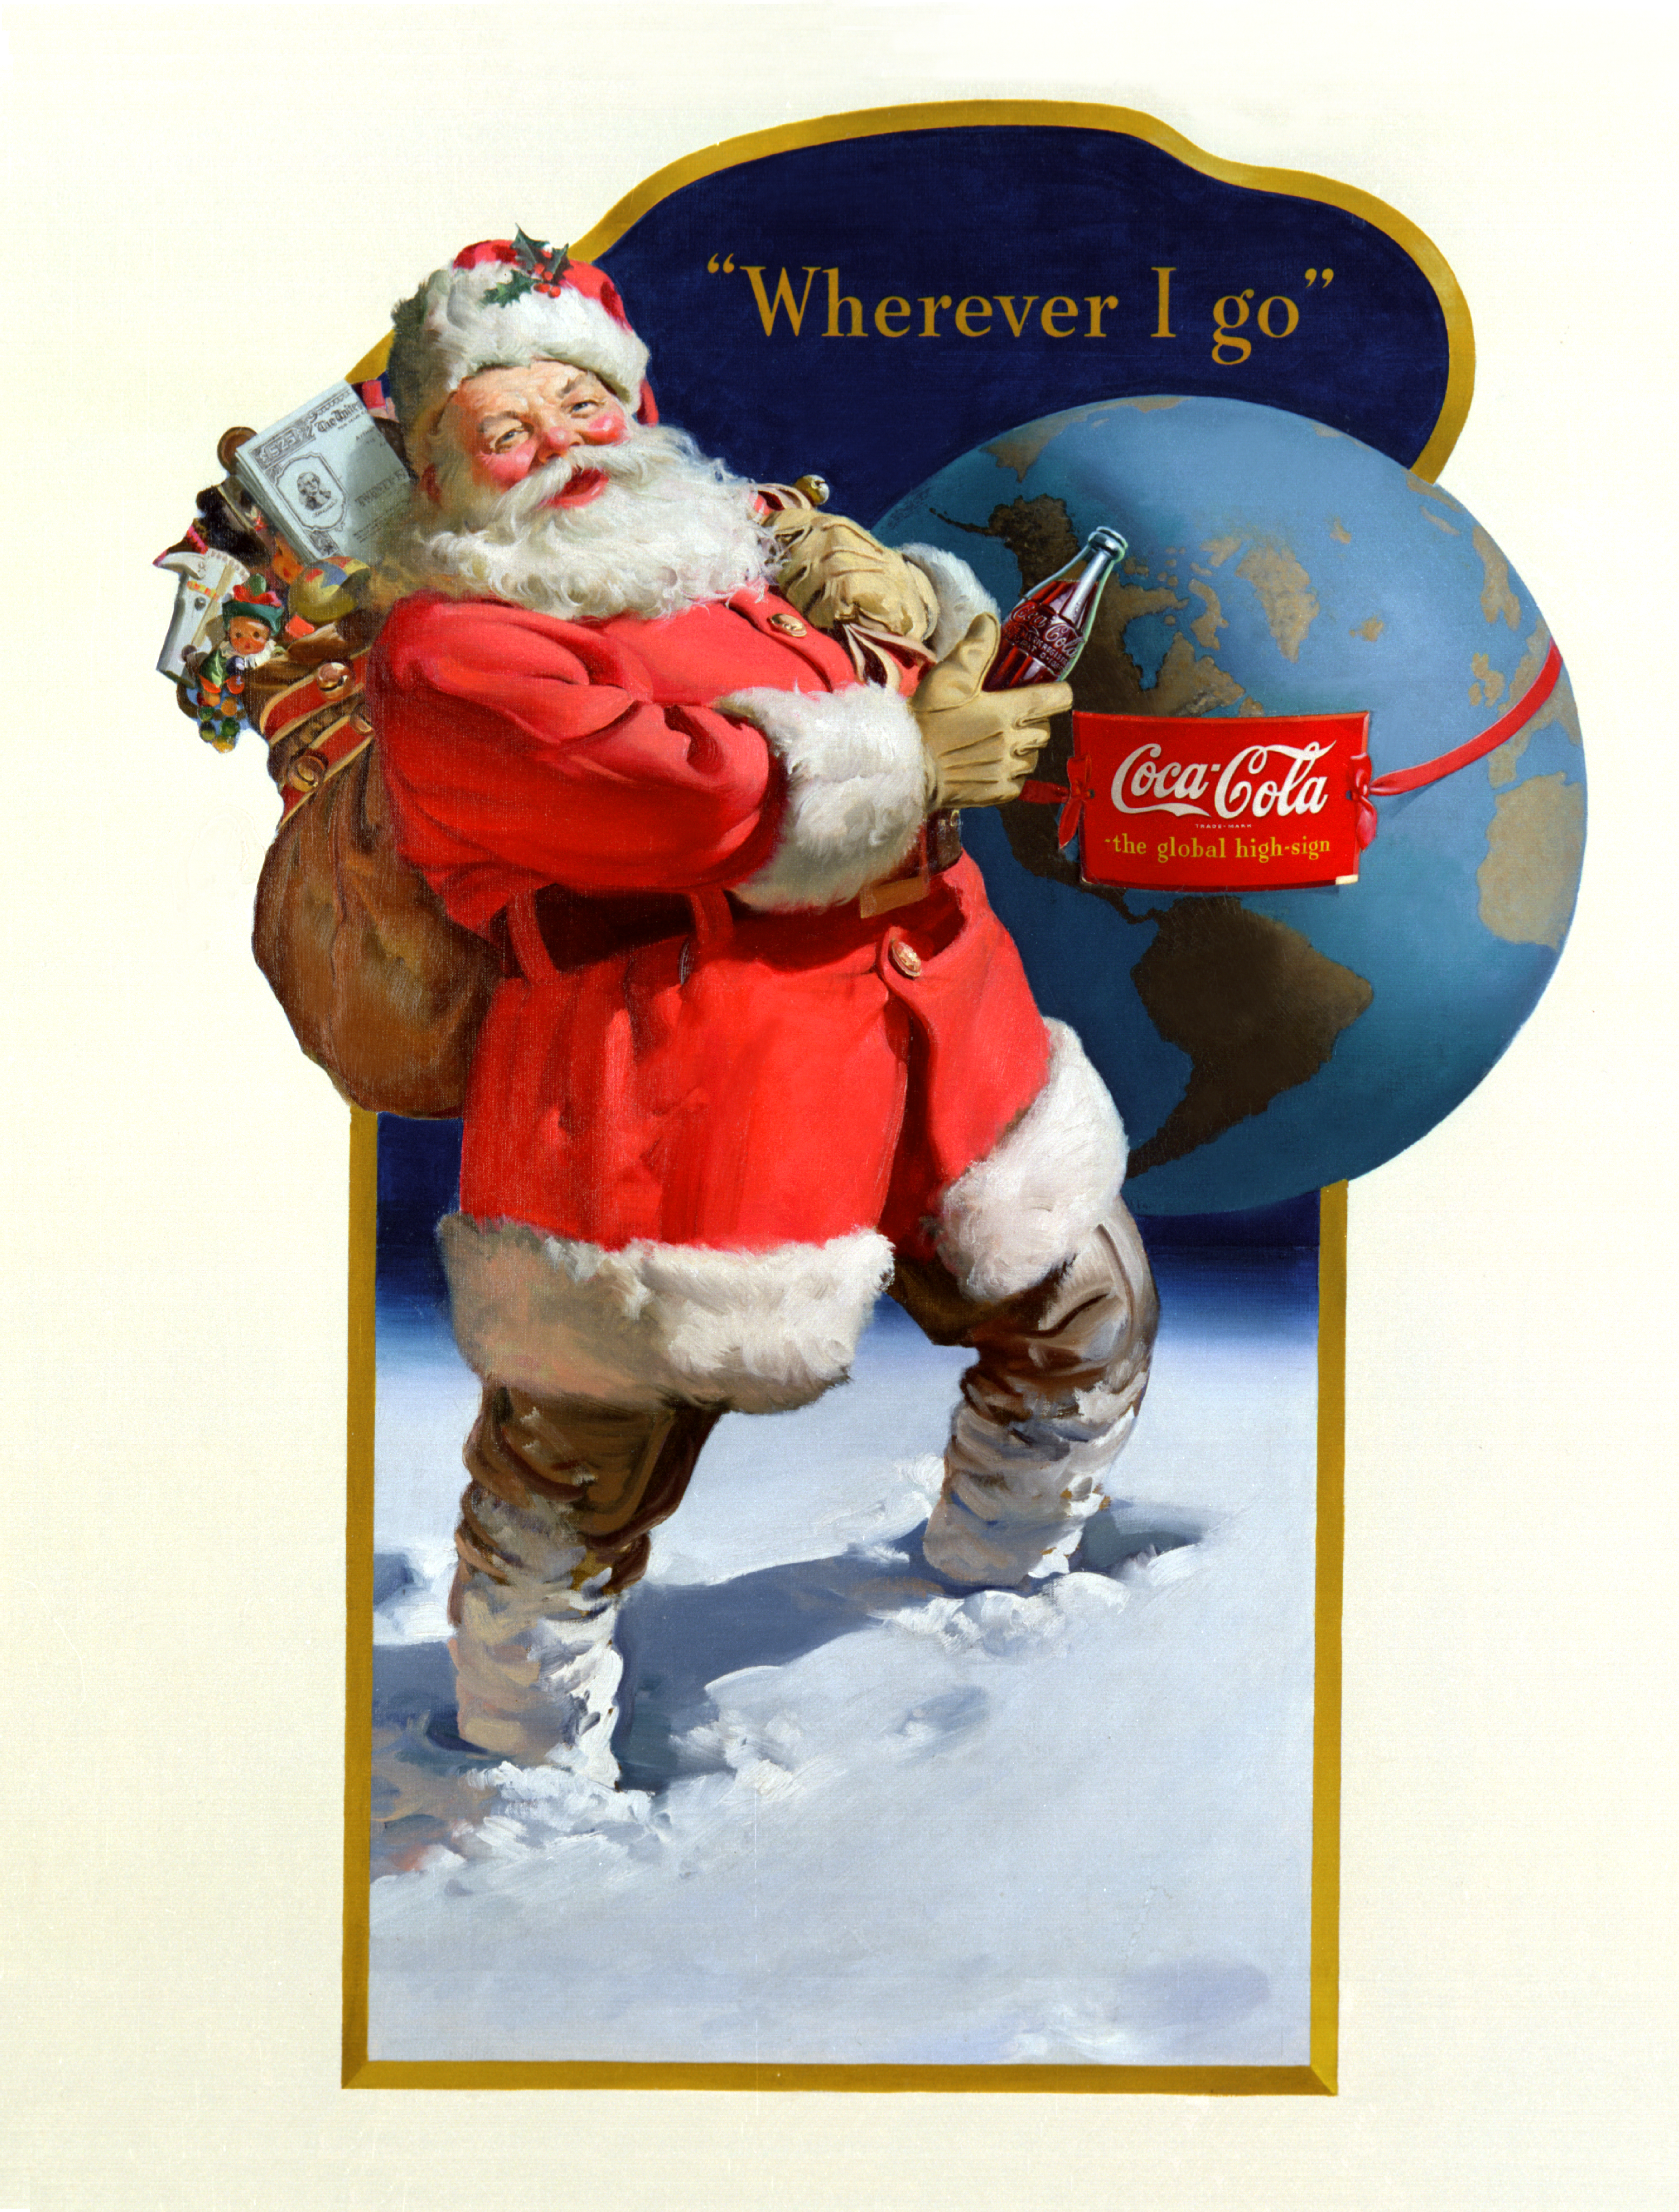 Publicité historique Coca-Cola - Père Noël 1943 - Wherever I Go